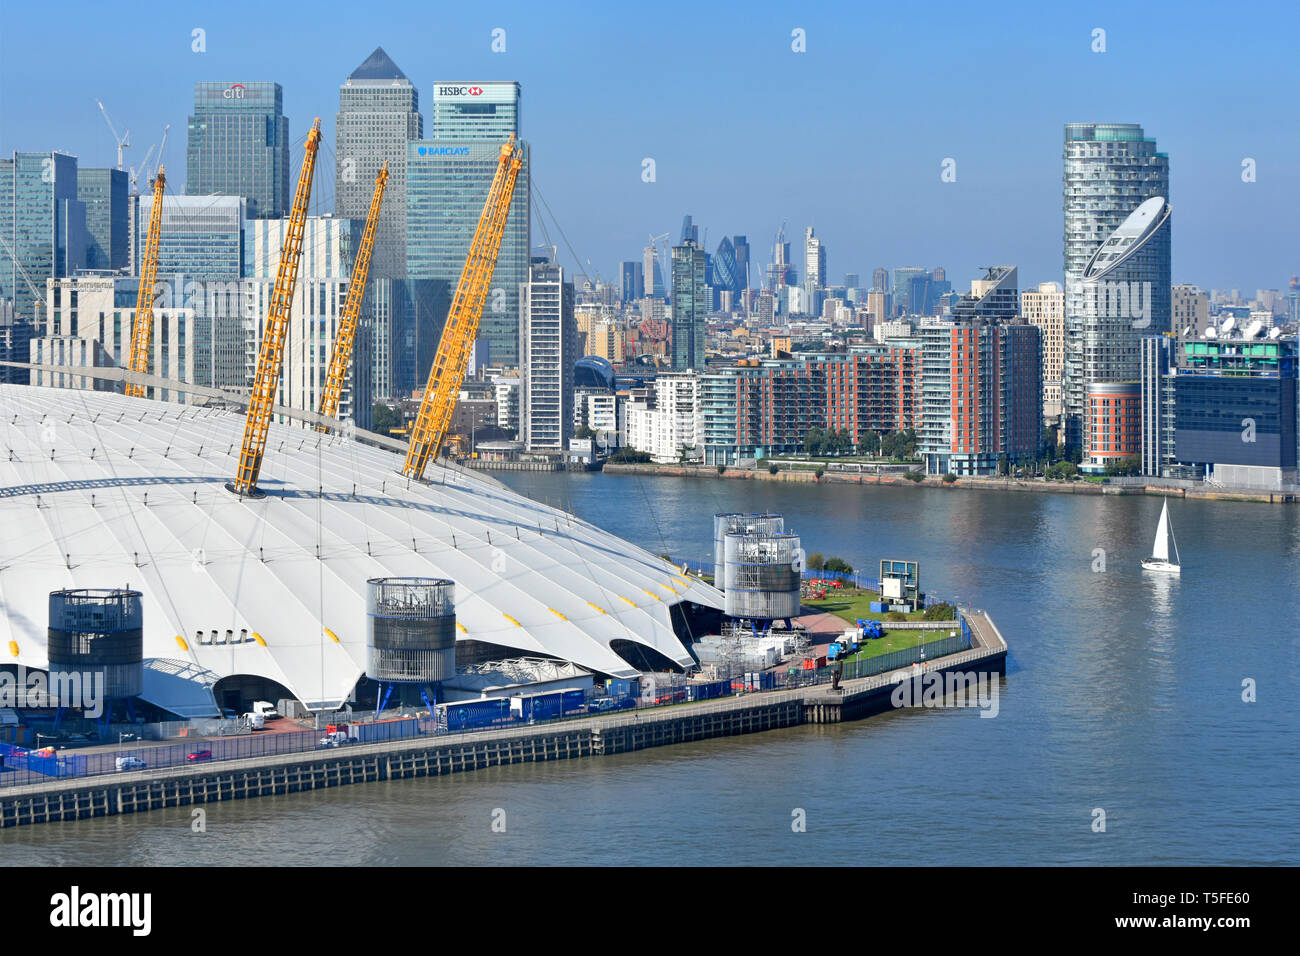 Vista aerea a flettere nel fiume Tamigi imbarcazione a vela & London Canary Wharf cityscape skyline arena O2 tetti a cupola penisola Greenwich Londra Inghilterra REGNO UNITO Foto Stock